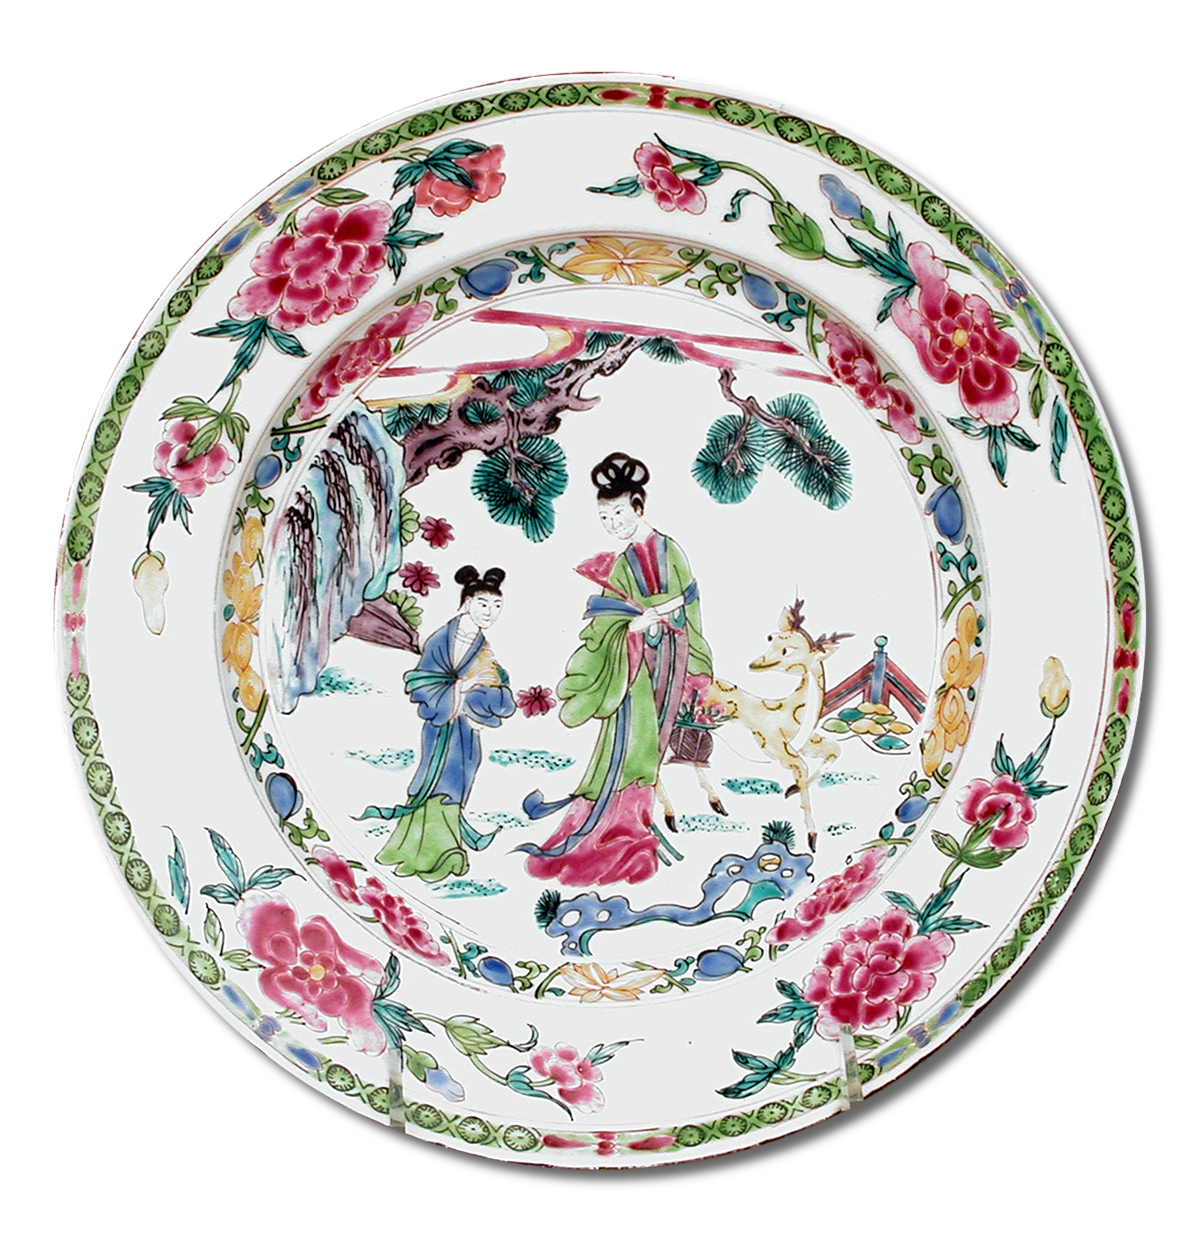 1755. Plate. British. Bow Porcelain Factory. Soft-paste porcelain